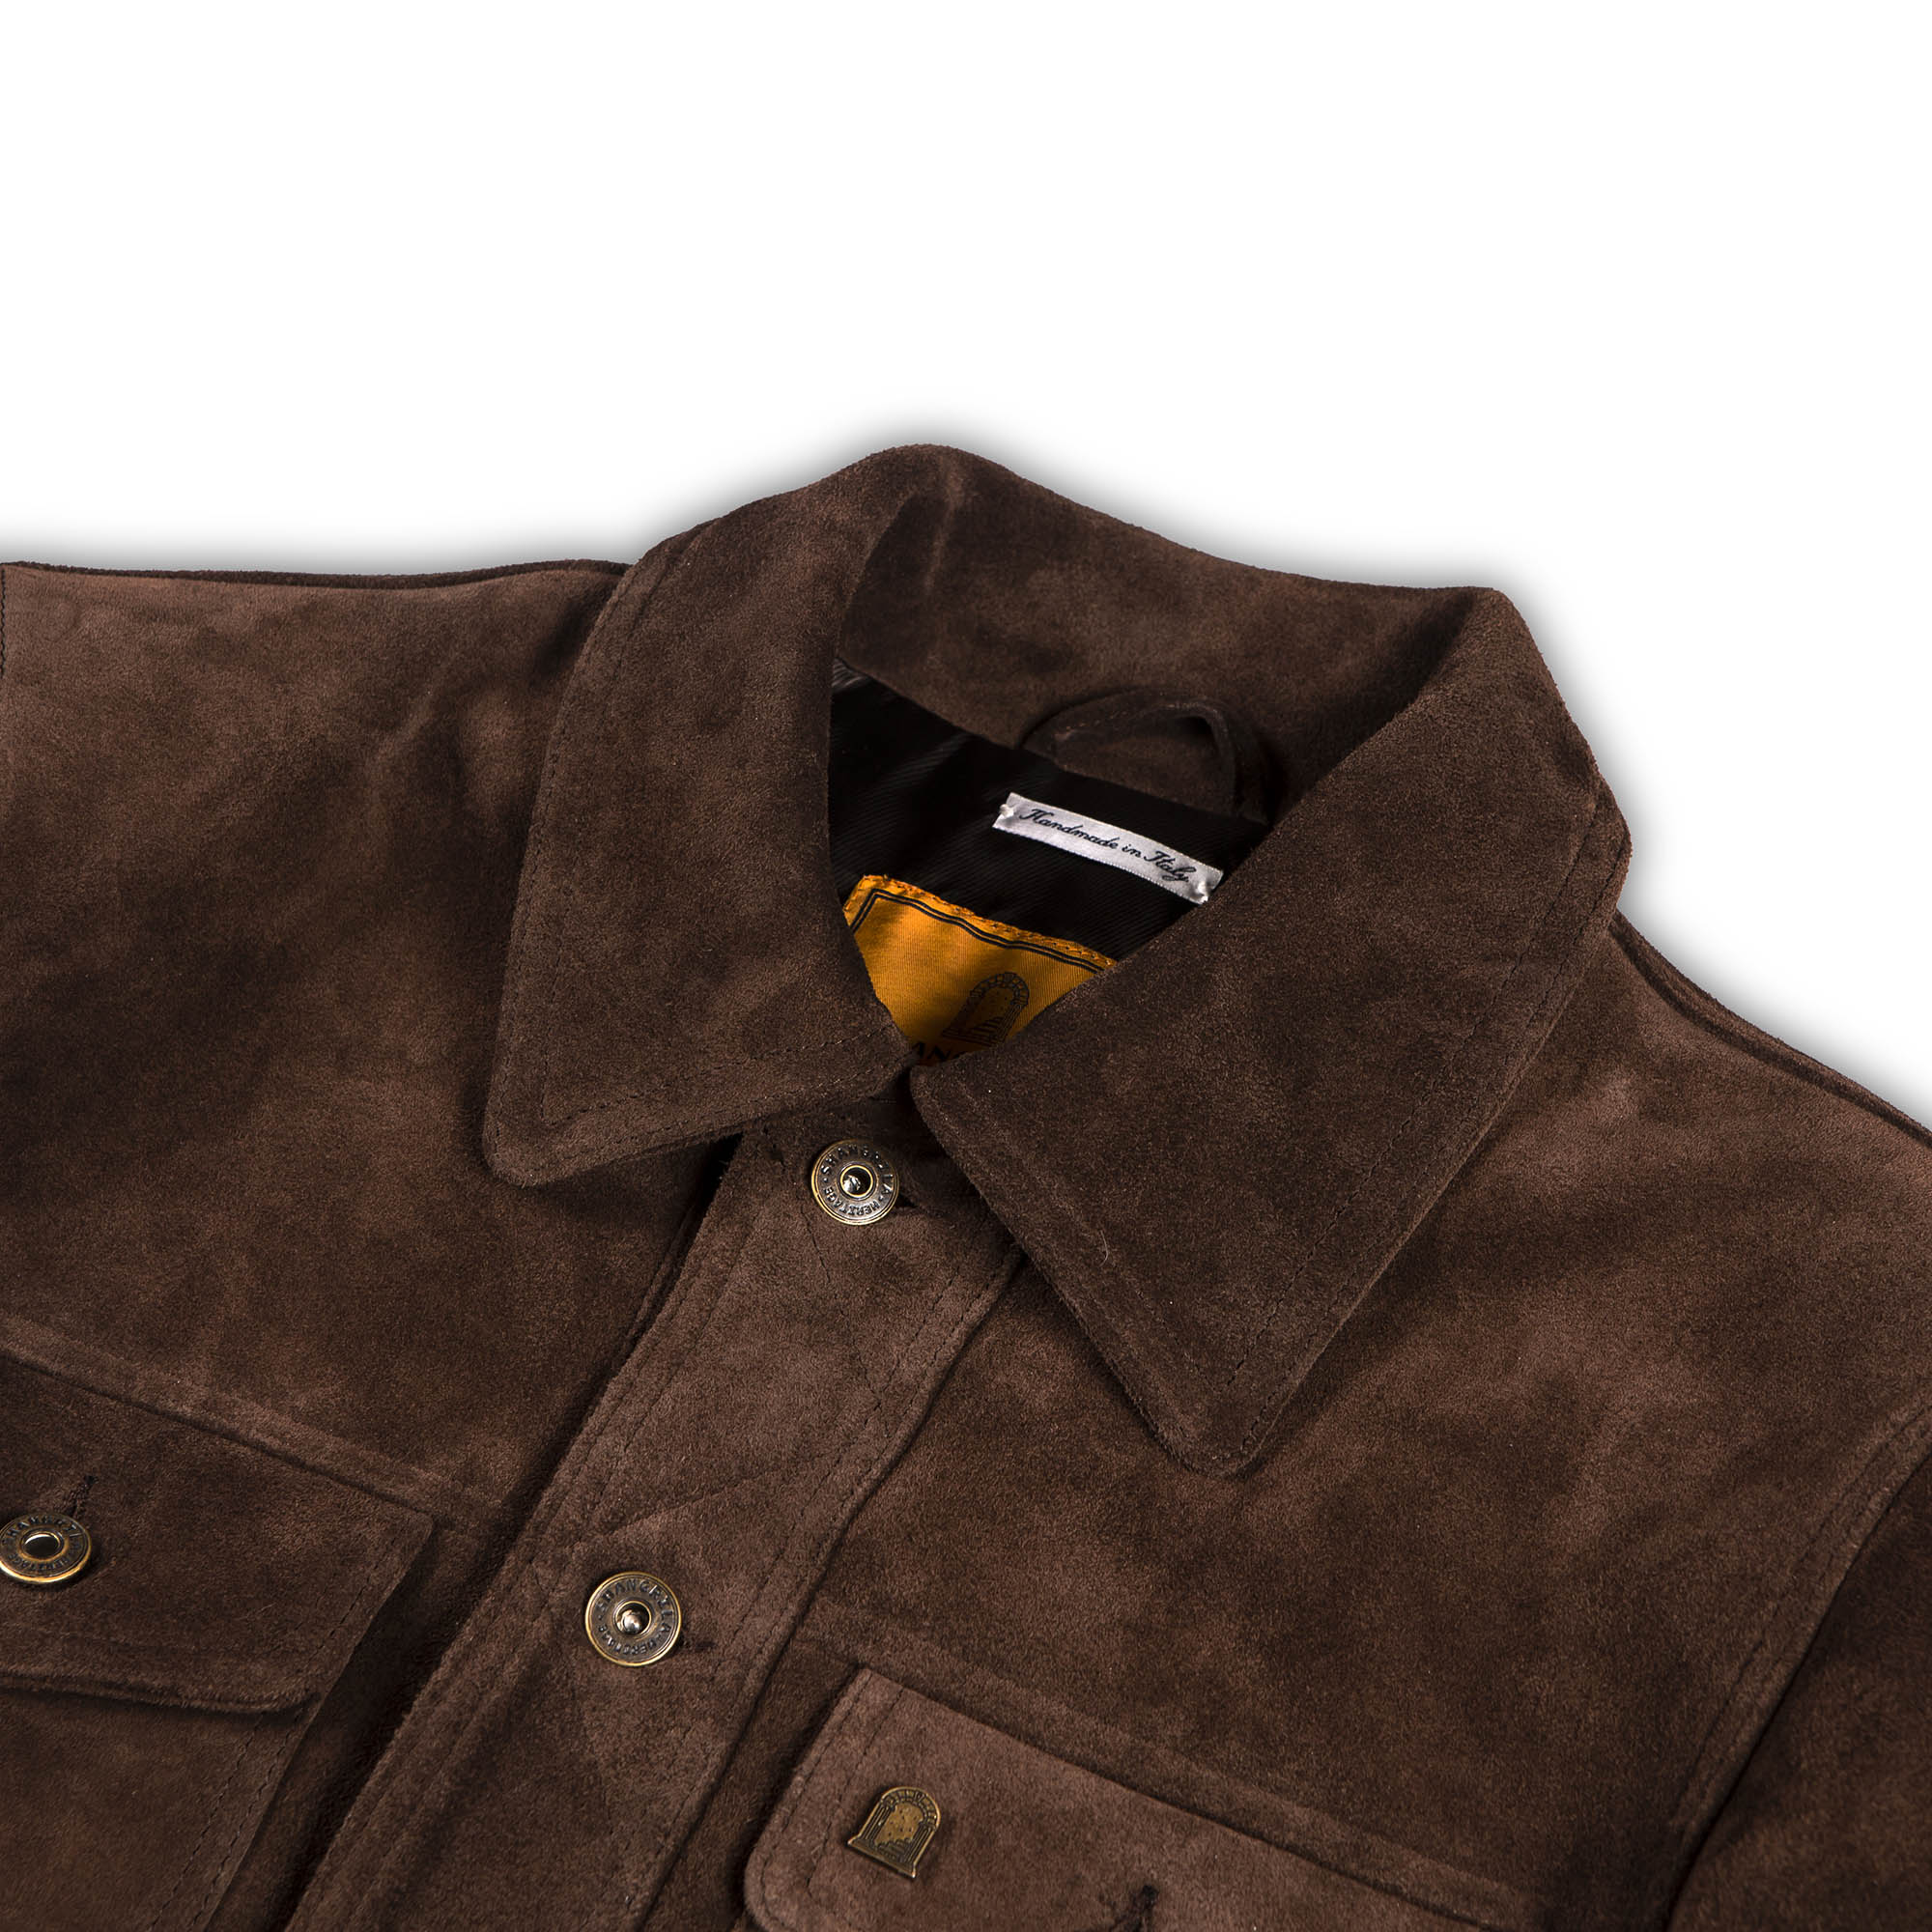 Shangri-La Heritage | “Terracotta'' jacket in Brown Suede - Renard ...